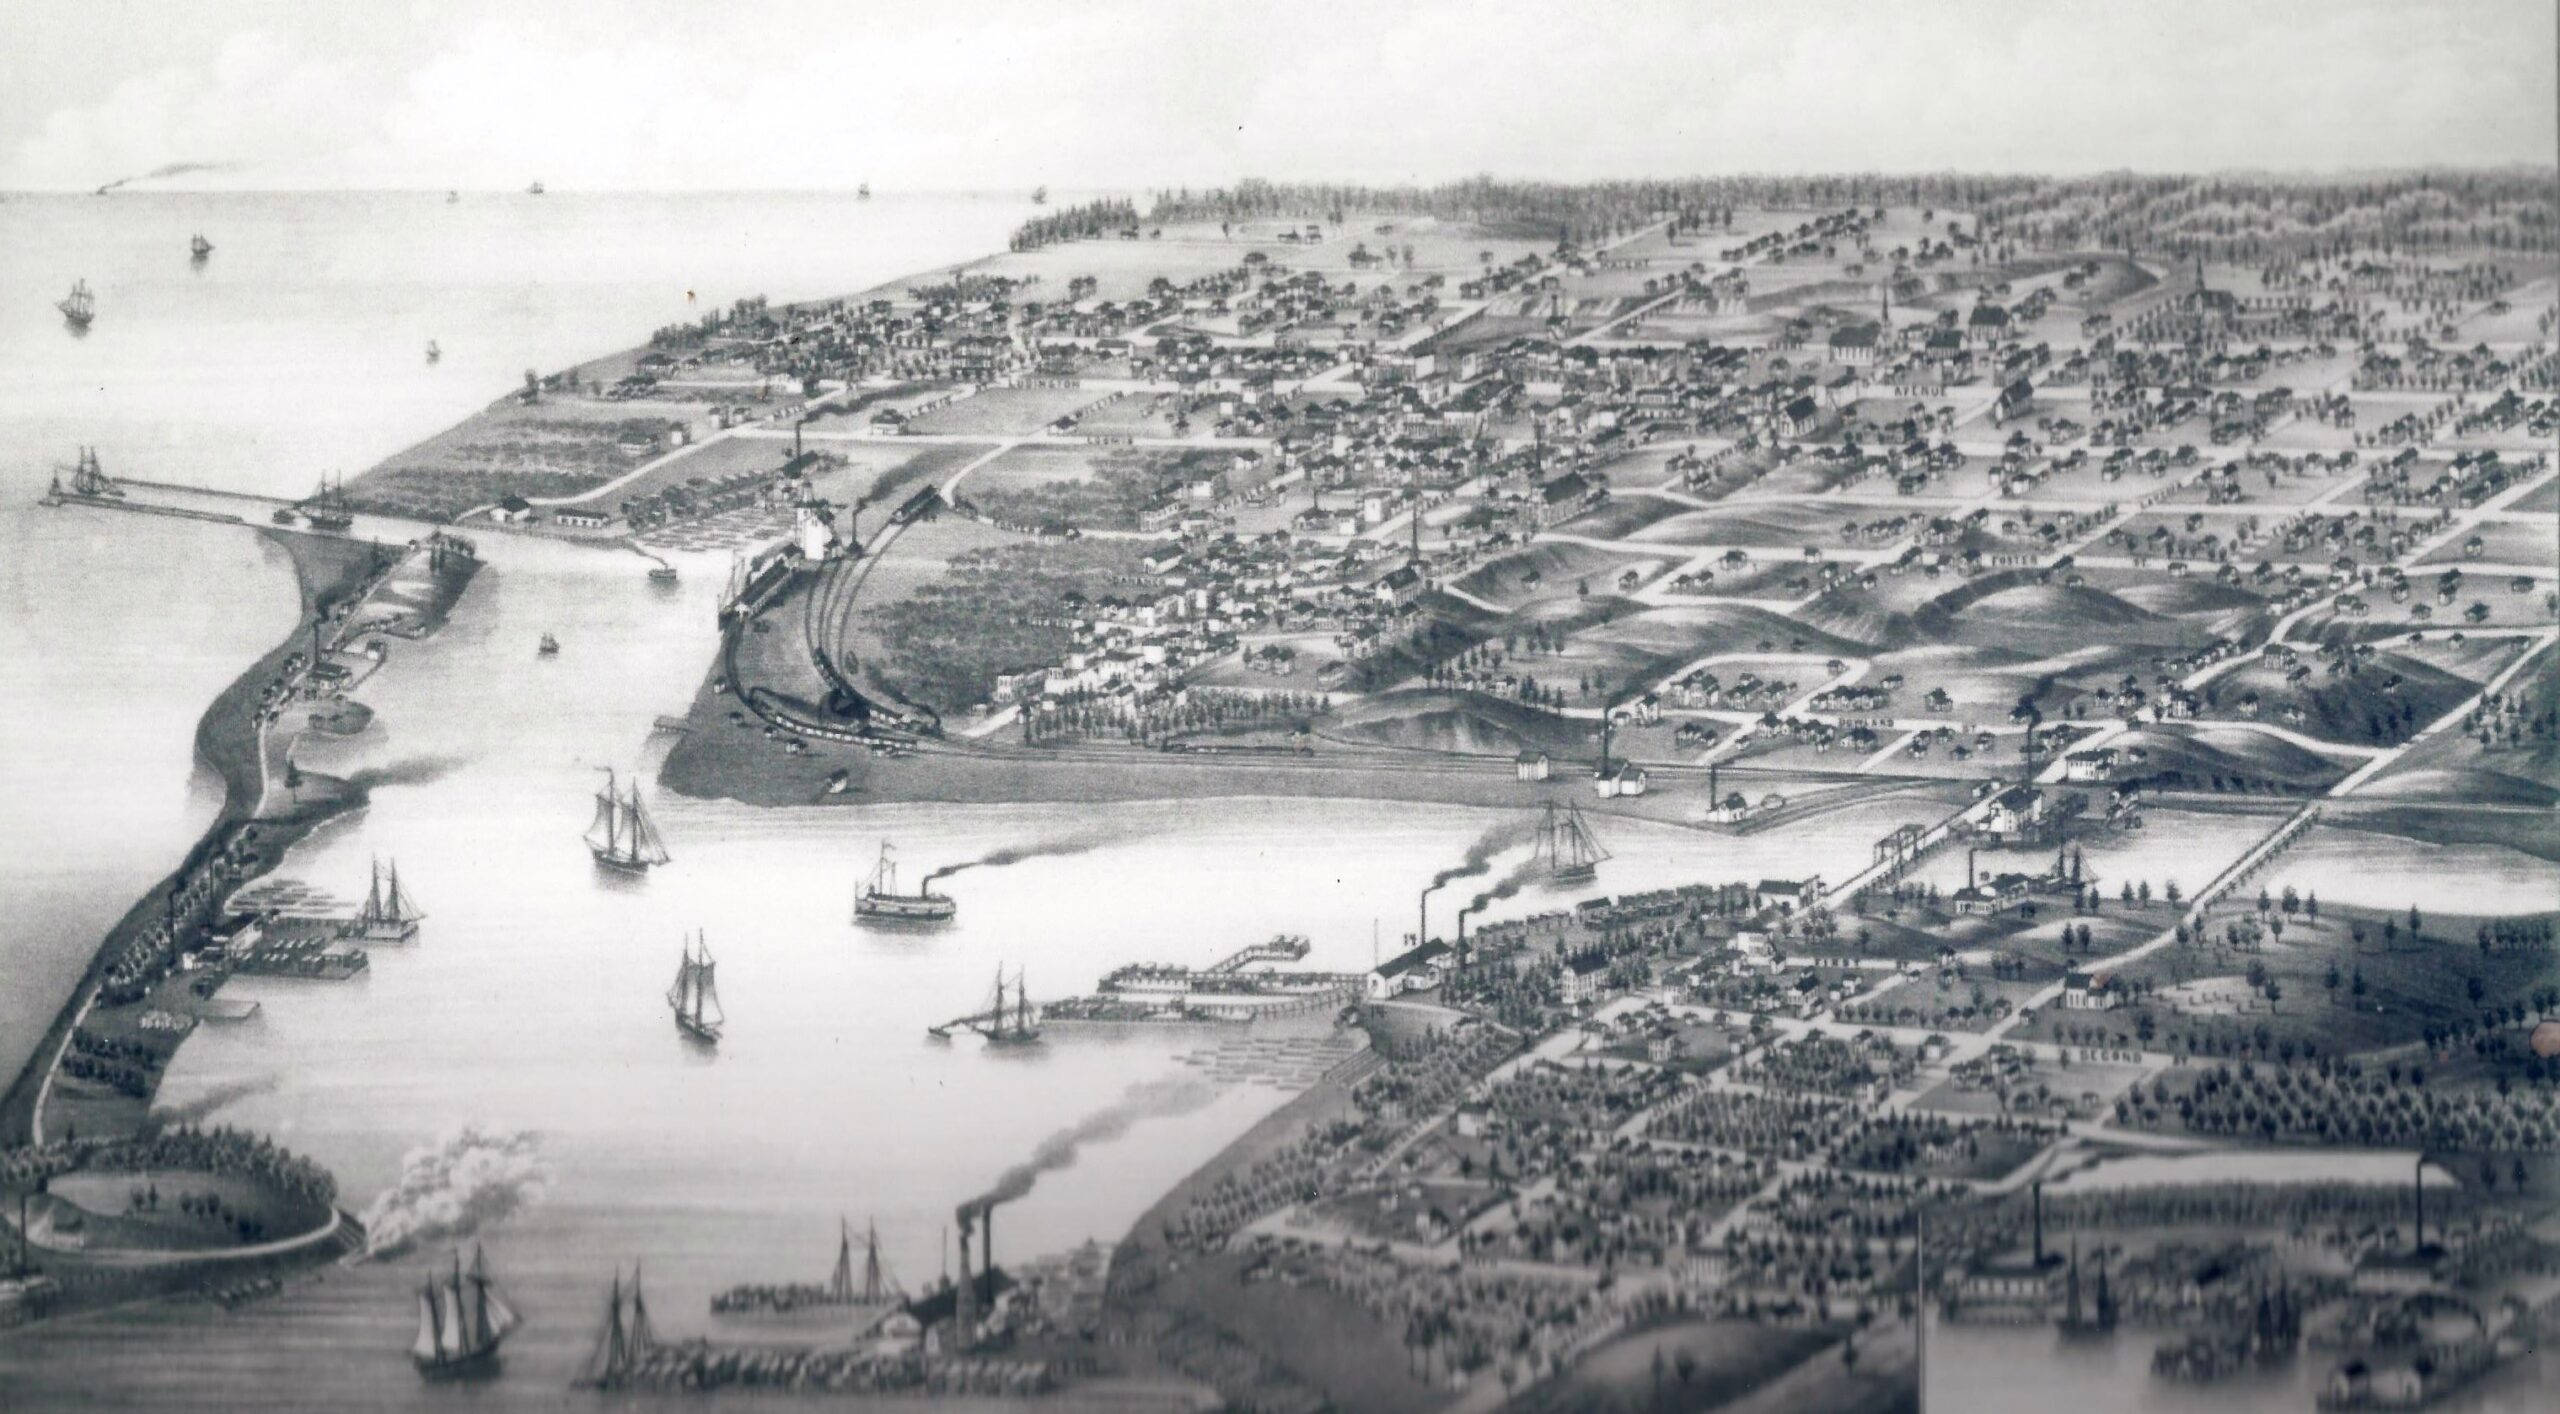 History of Ludington - Harbor